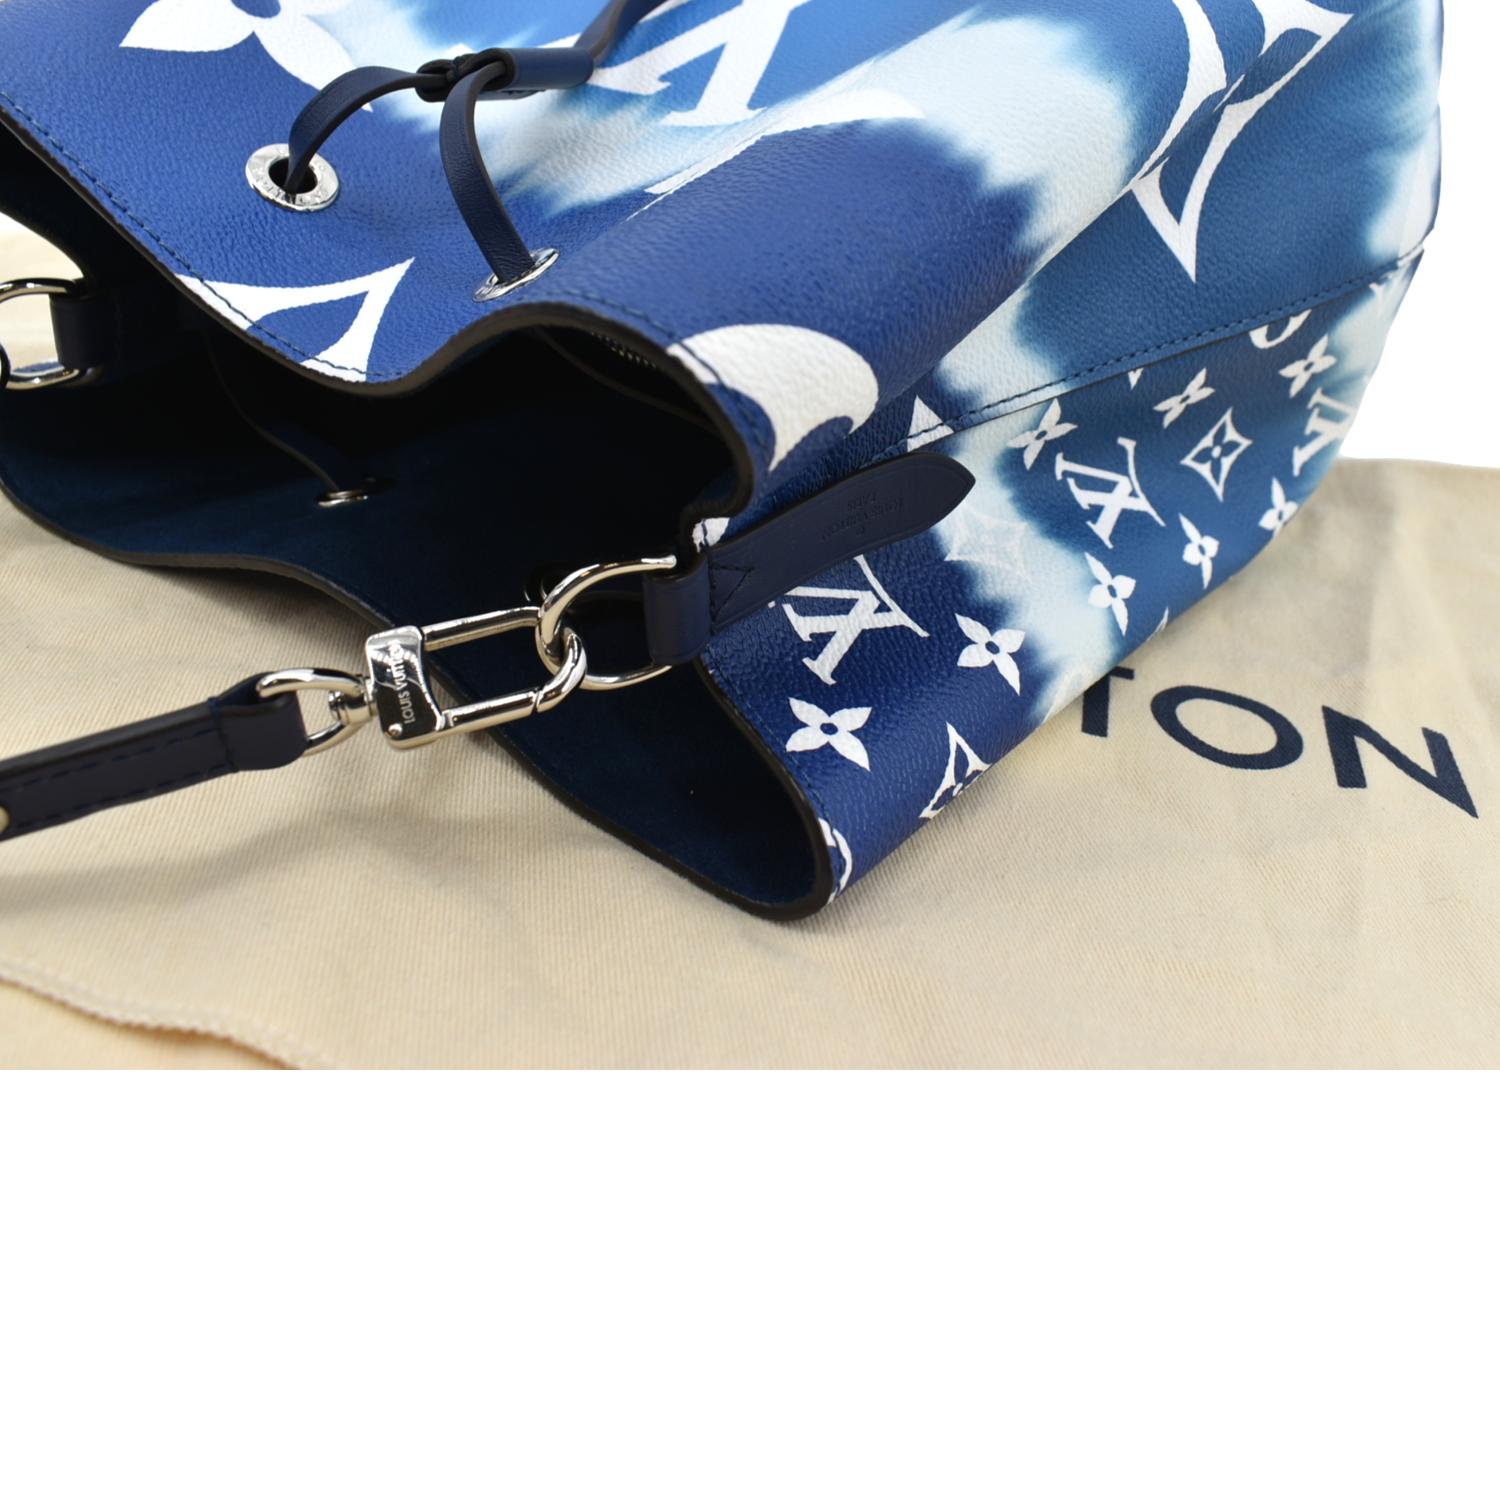 Louis Vuitton NEONOE MM limited edition Escale